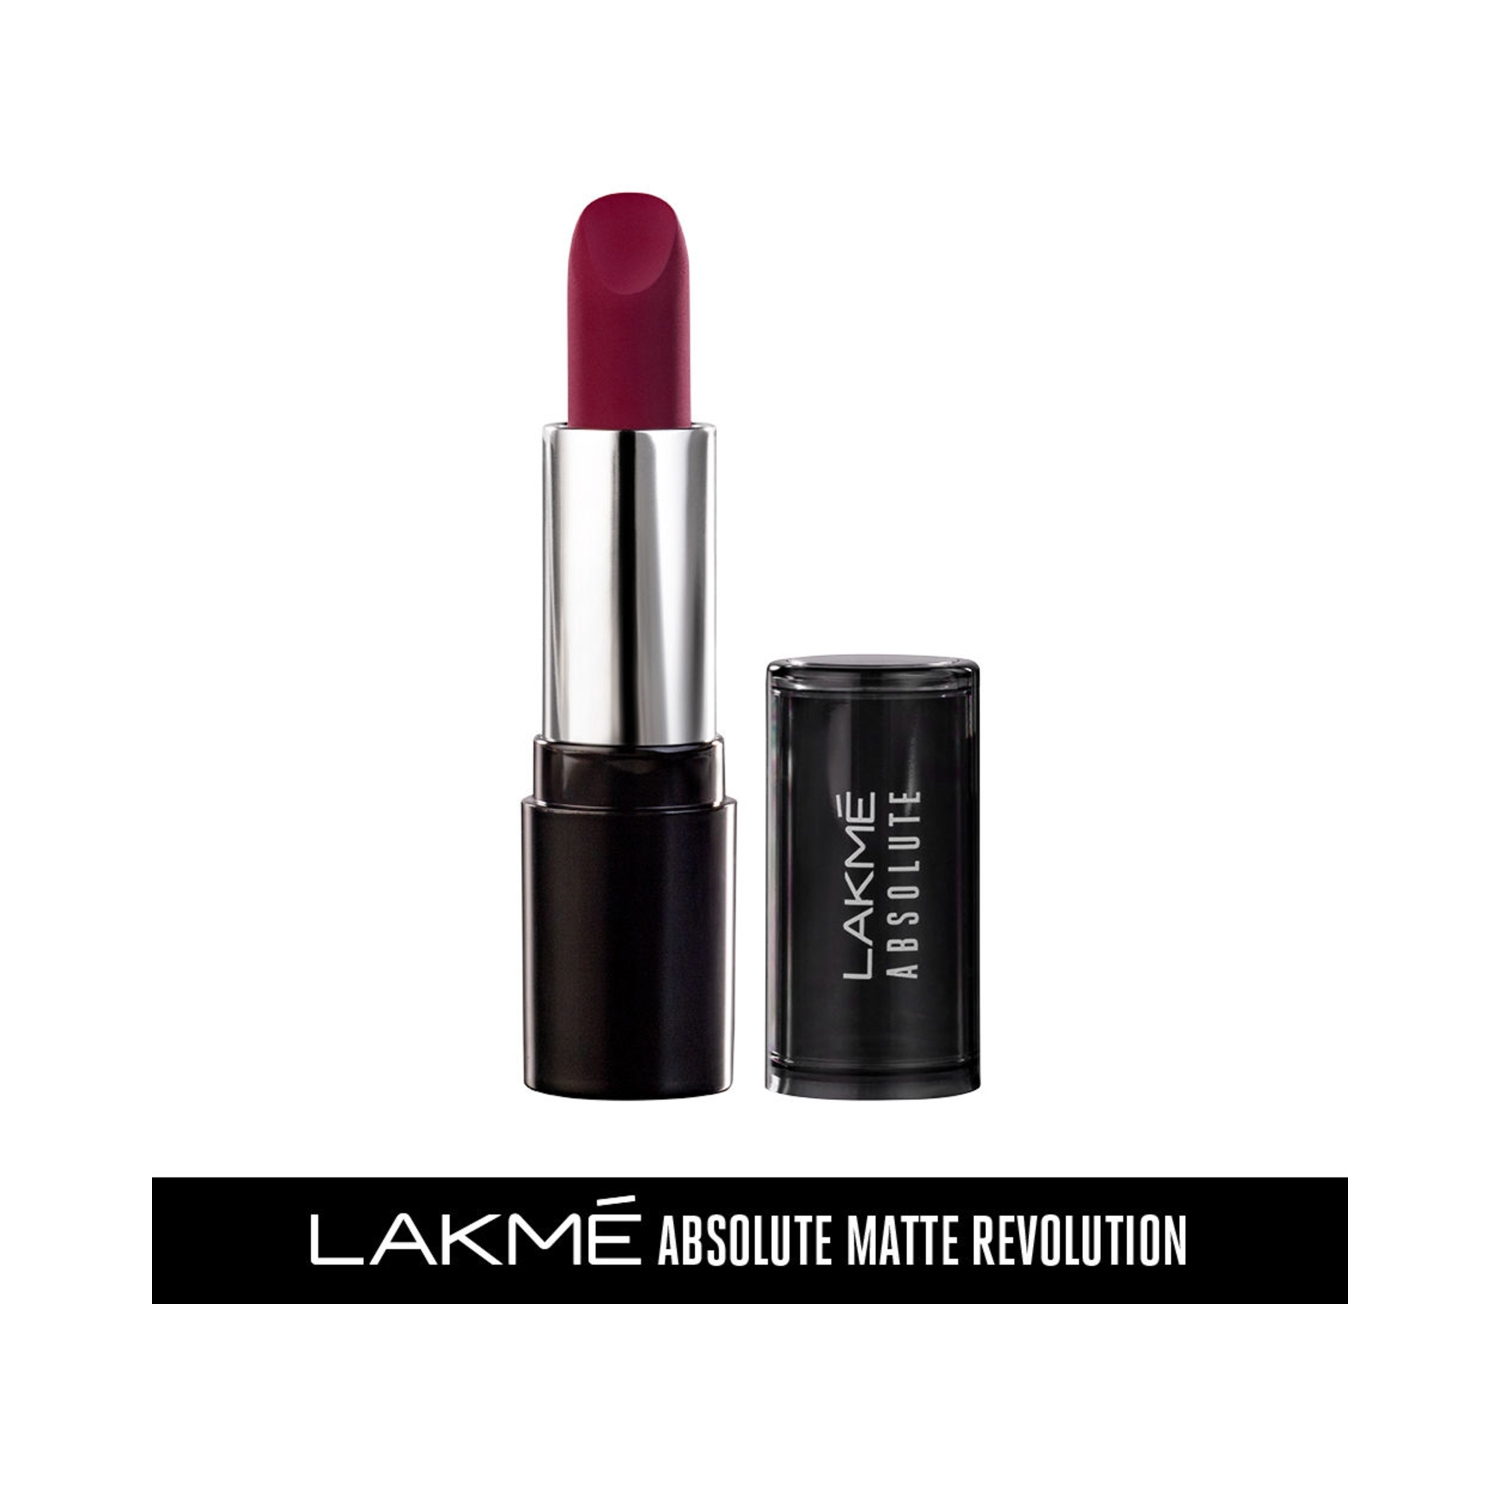 Lakme | Lakme Absolute Matte Revolution Lip Color - 501 Dynamite Berry (3.5g)